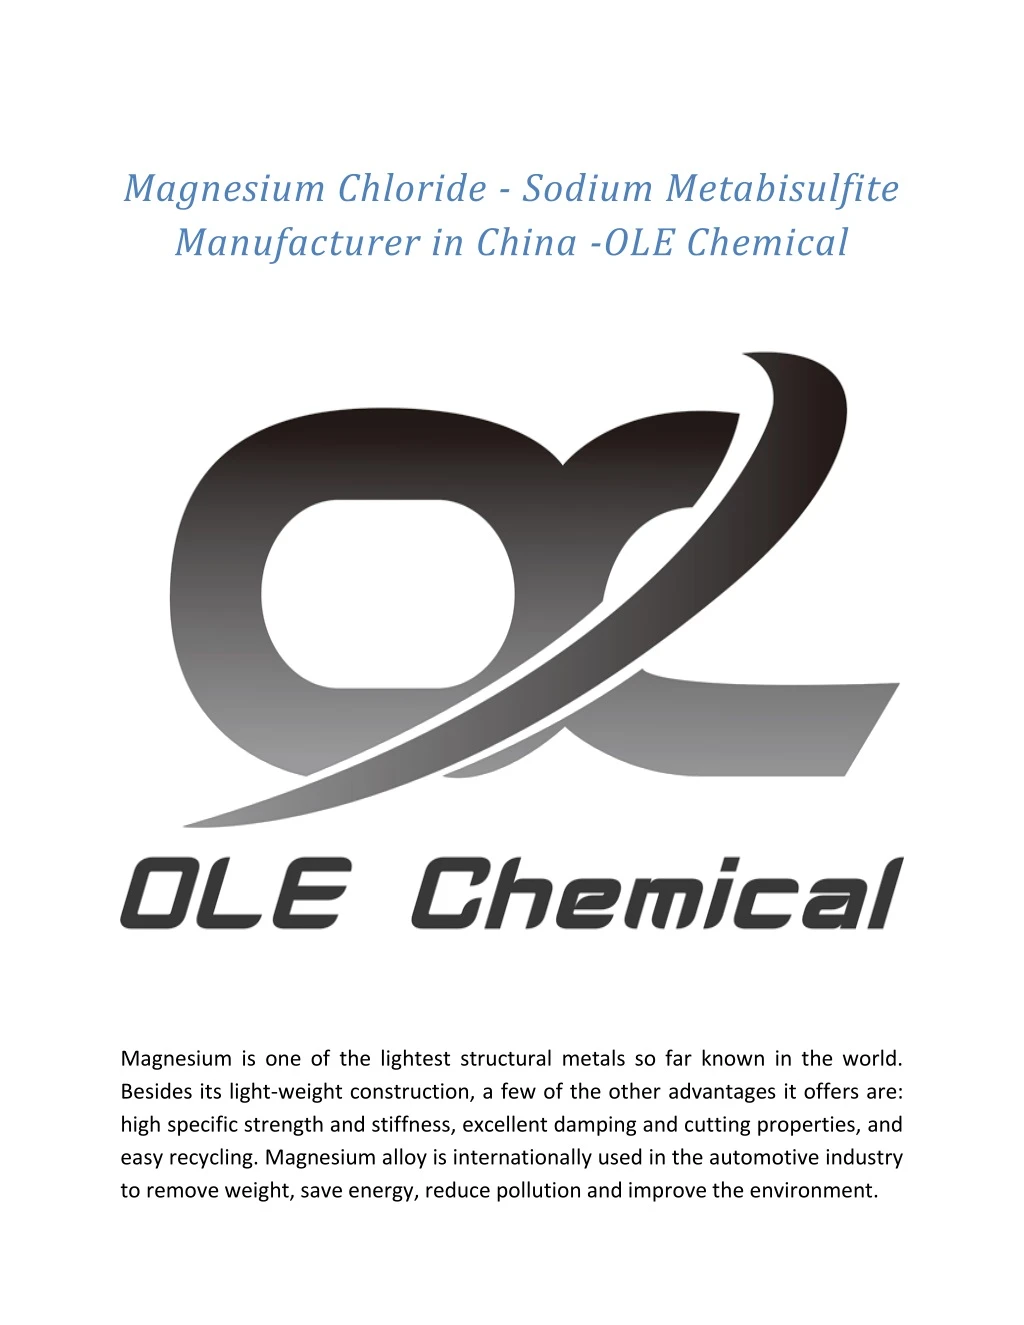 magnesium chloride sodium metabisulfite